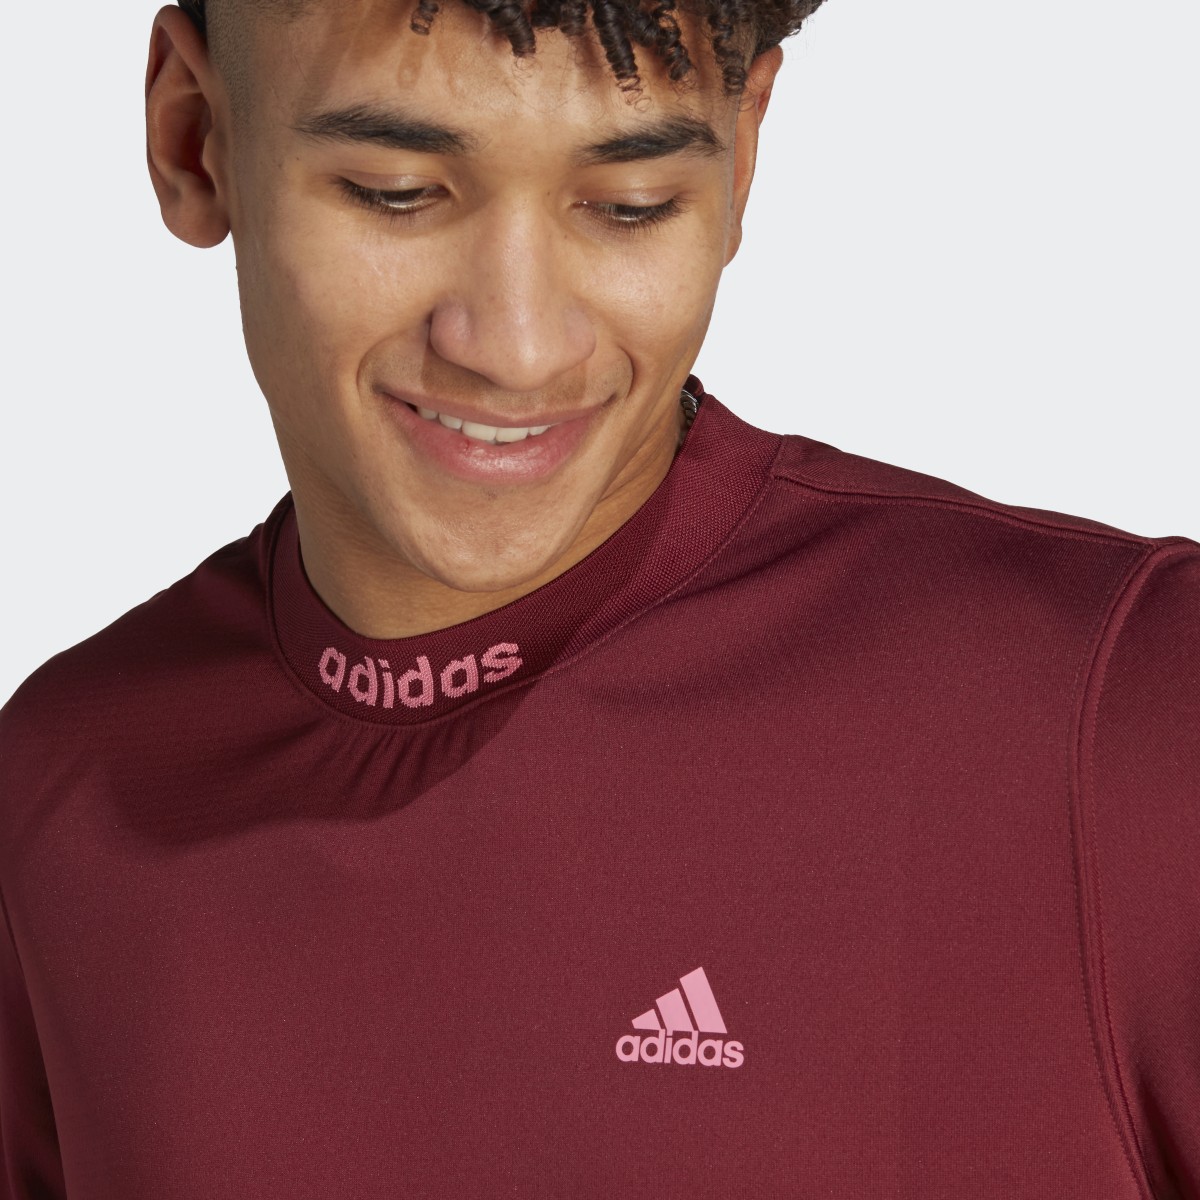 Adidas T-shirt com Costas em Rede. 6